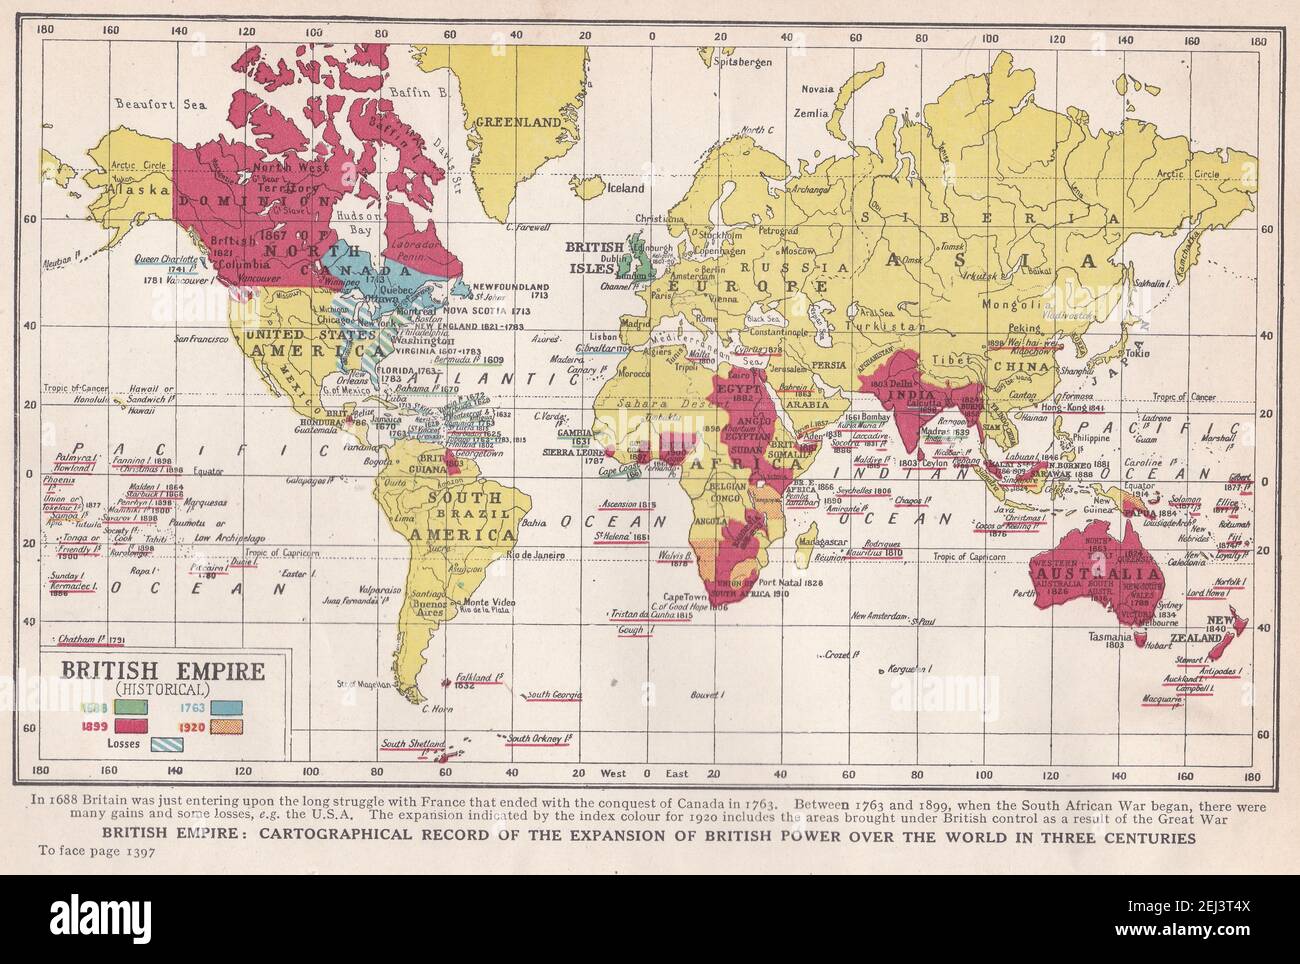 Carte ancienne de l'Empire britannique (historique) - enregistrement cartographique de l'expansion de la puissance britannique sur le monde en trois siècles. Banque D'Images